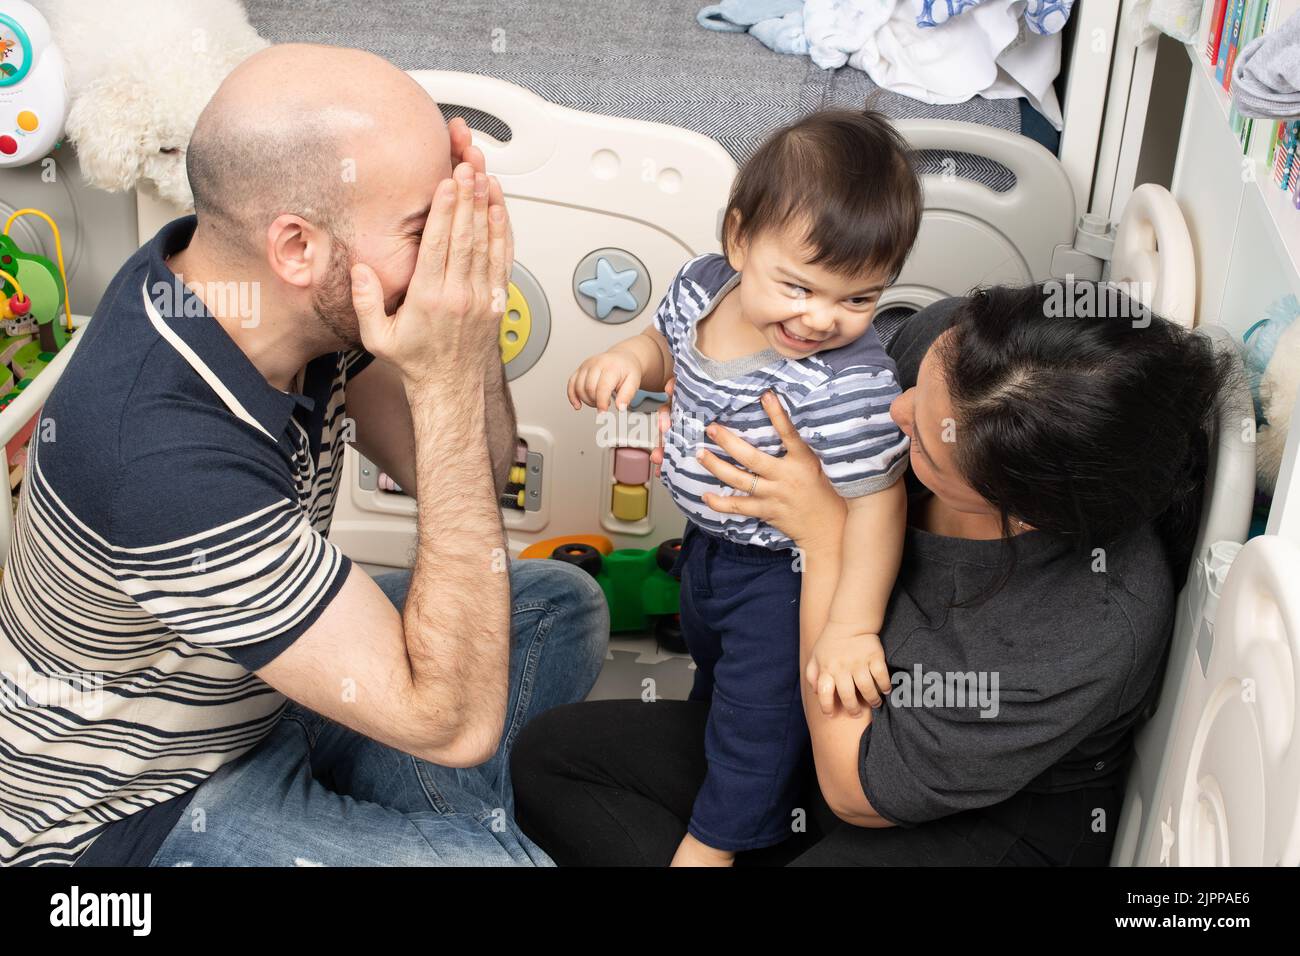 bébé garçon de 11 mois à la maison avec les parents bébé se tournant pour rire avec la mère comme le père joue un coup de piquer Banque D'Images